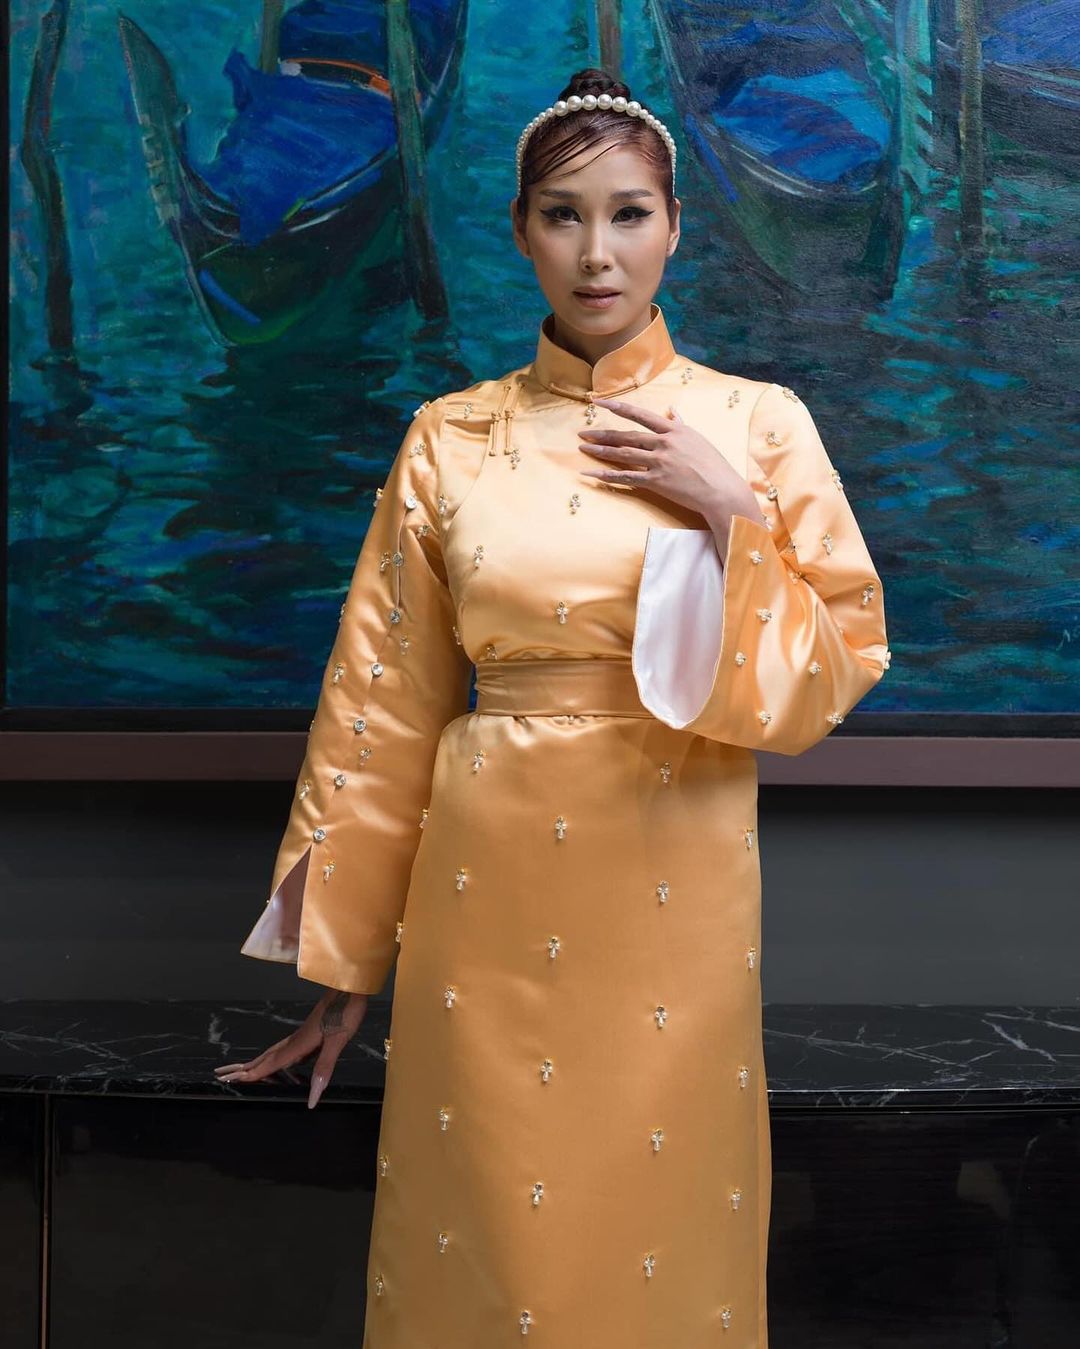 Tugs Mongolian women wear golden deel